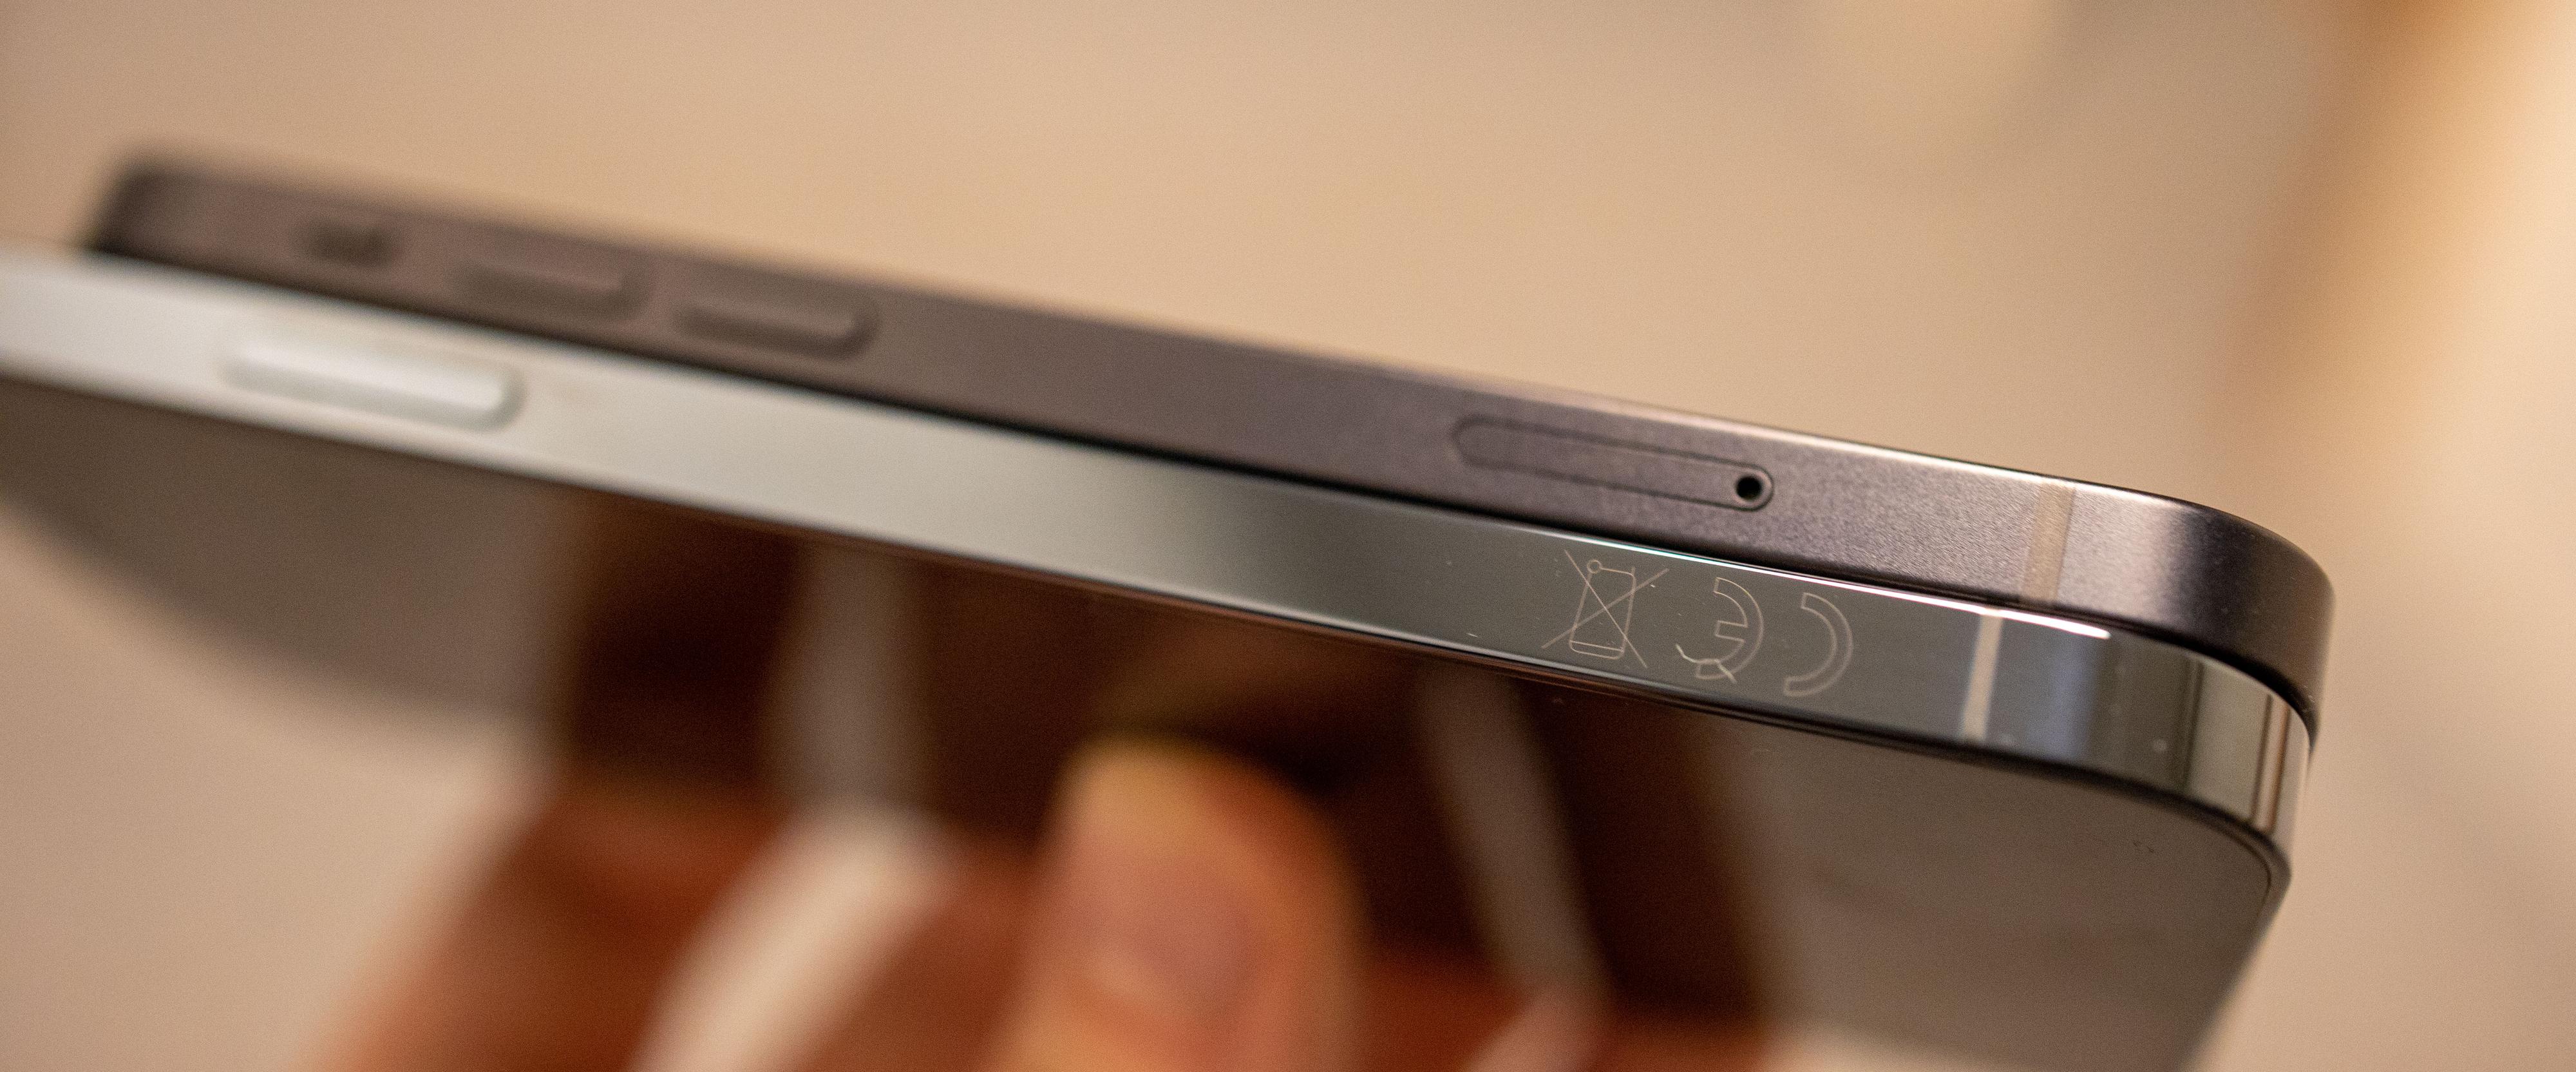 Den matte siden på iPhone 12 Mini får mindre fingeravtrykksmerker enn den blanke overflaten på iPhone 12 Pro. 